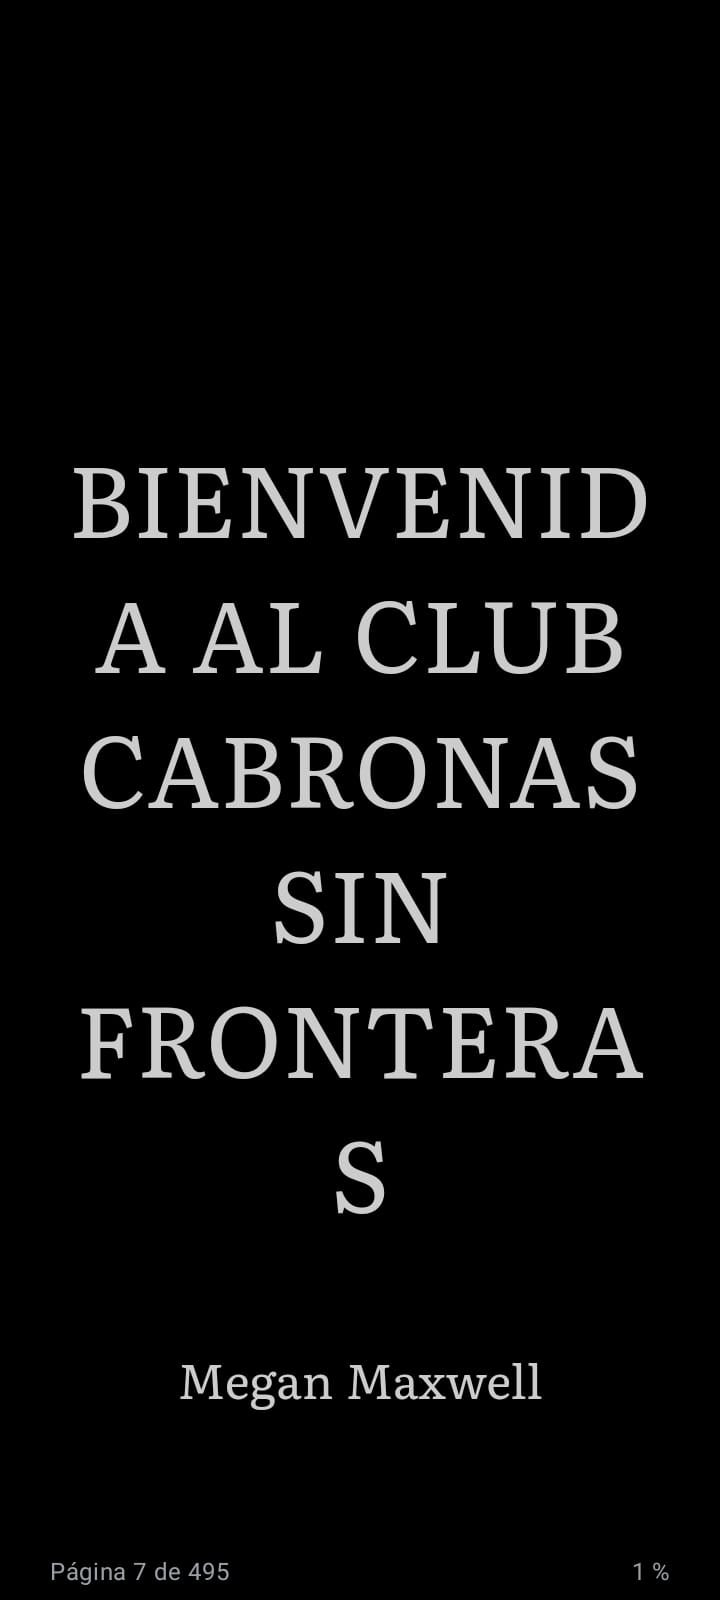 Bienvenida al Club Cabronas sin Fronteras